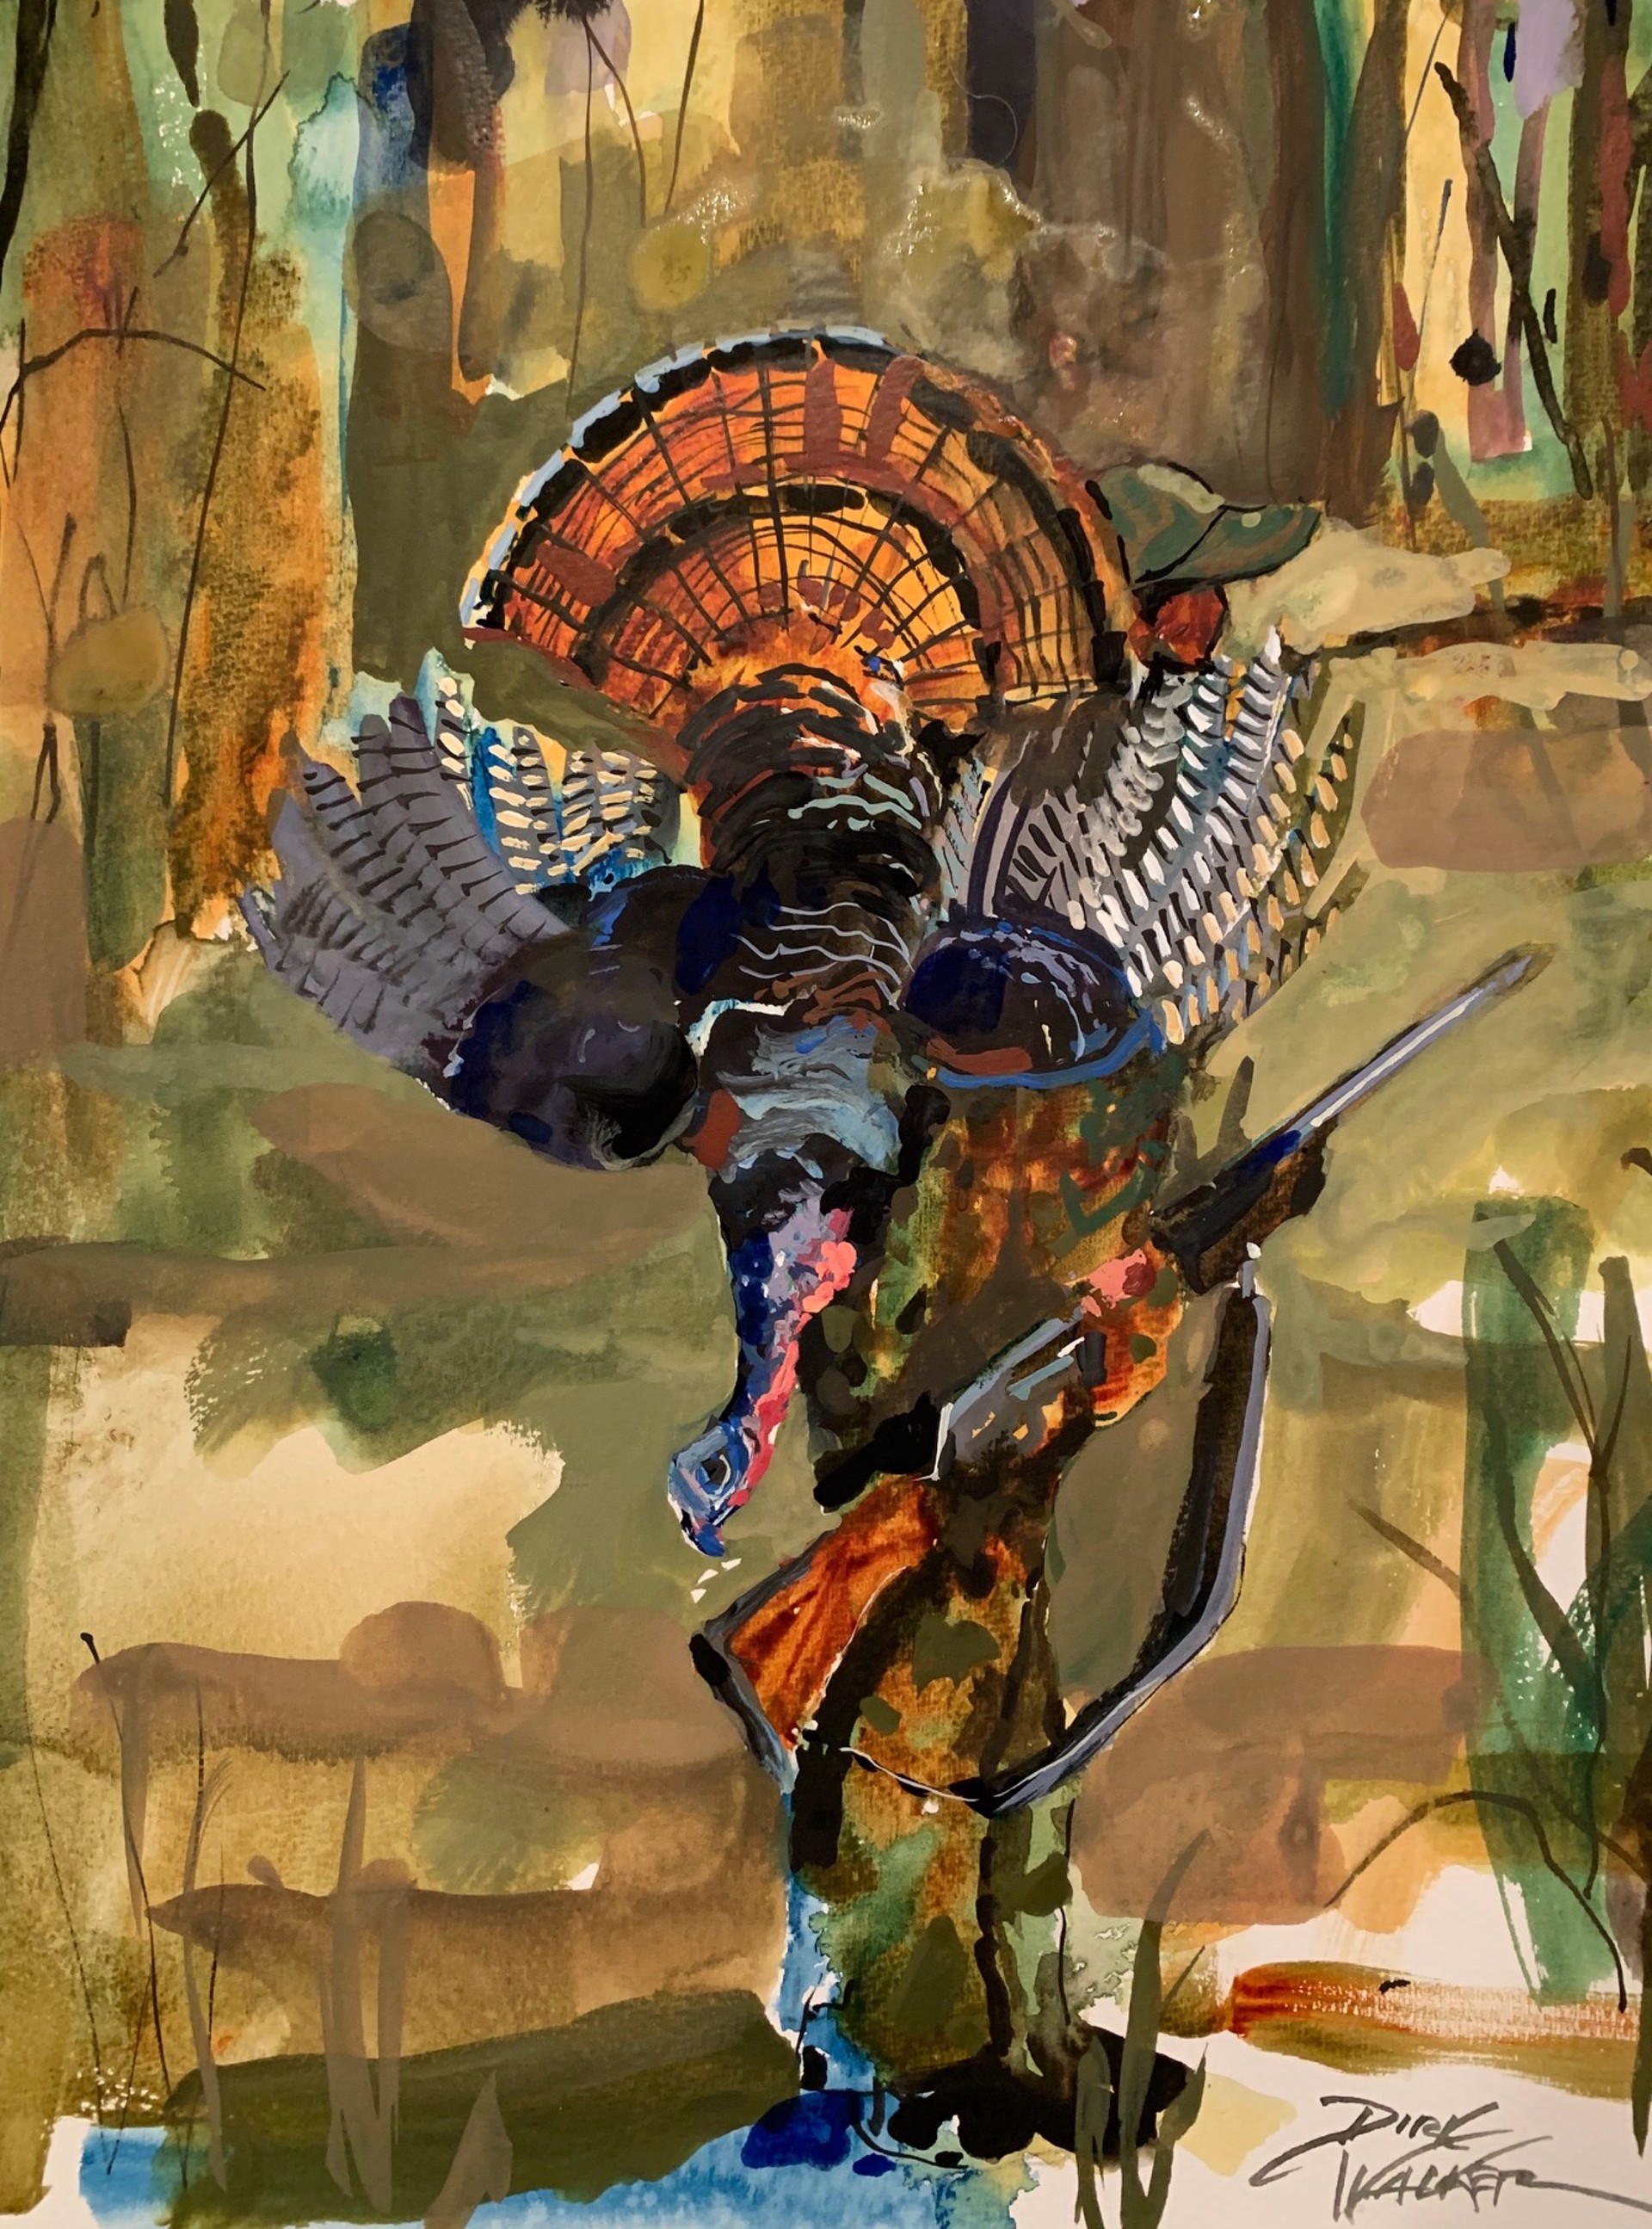 The Turkey Hunter II by Dirk Walker